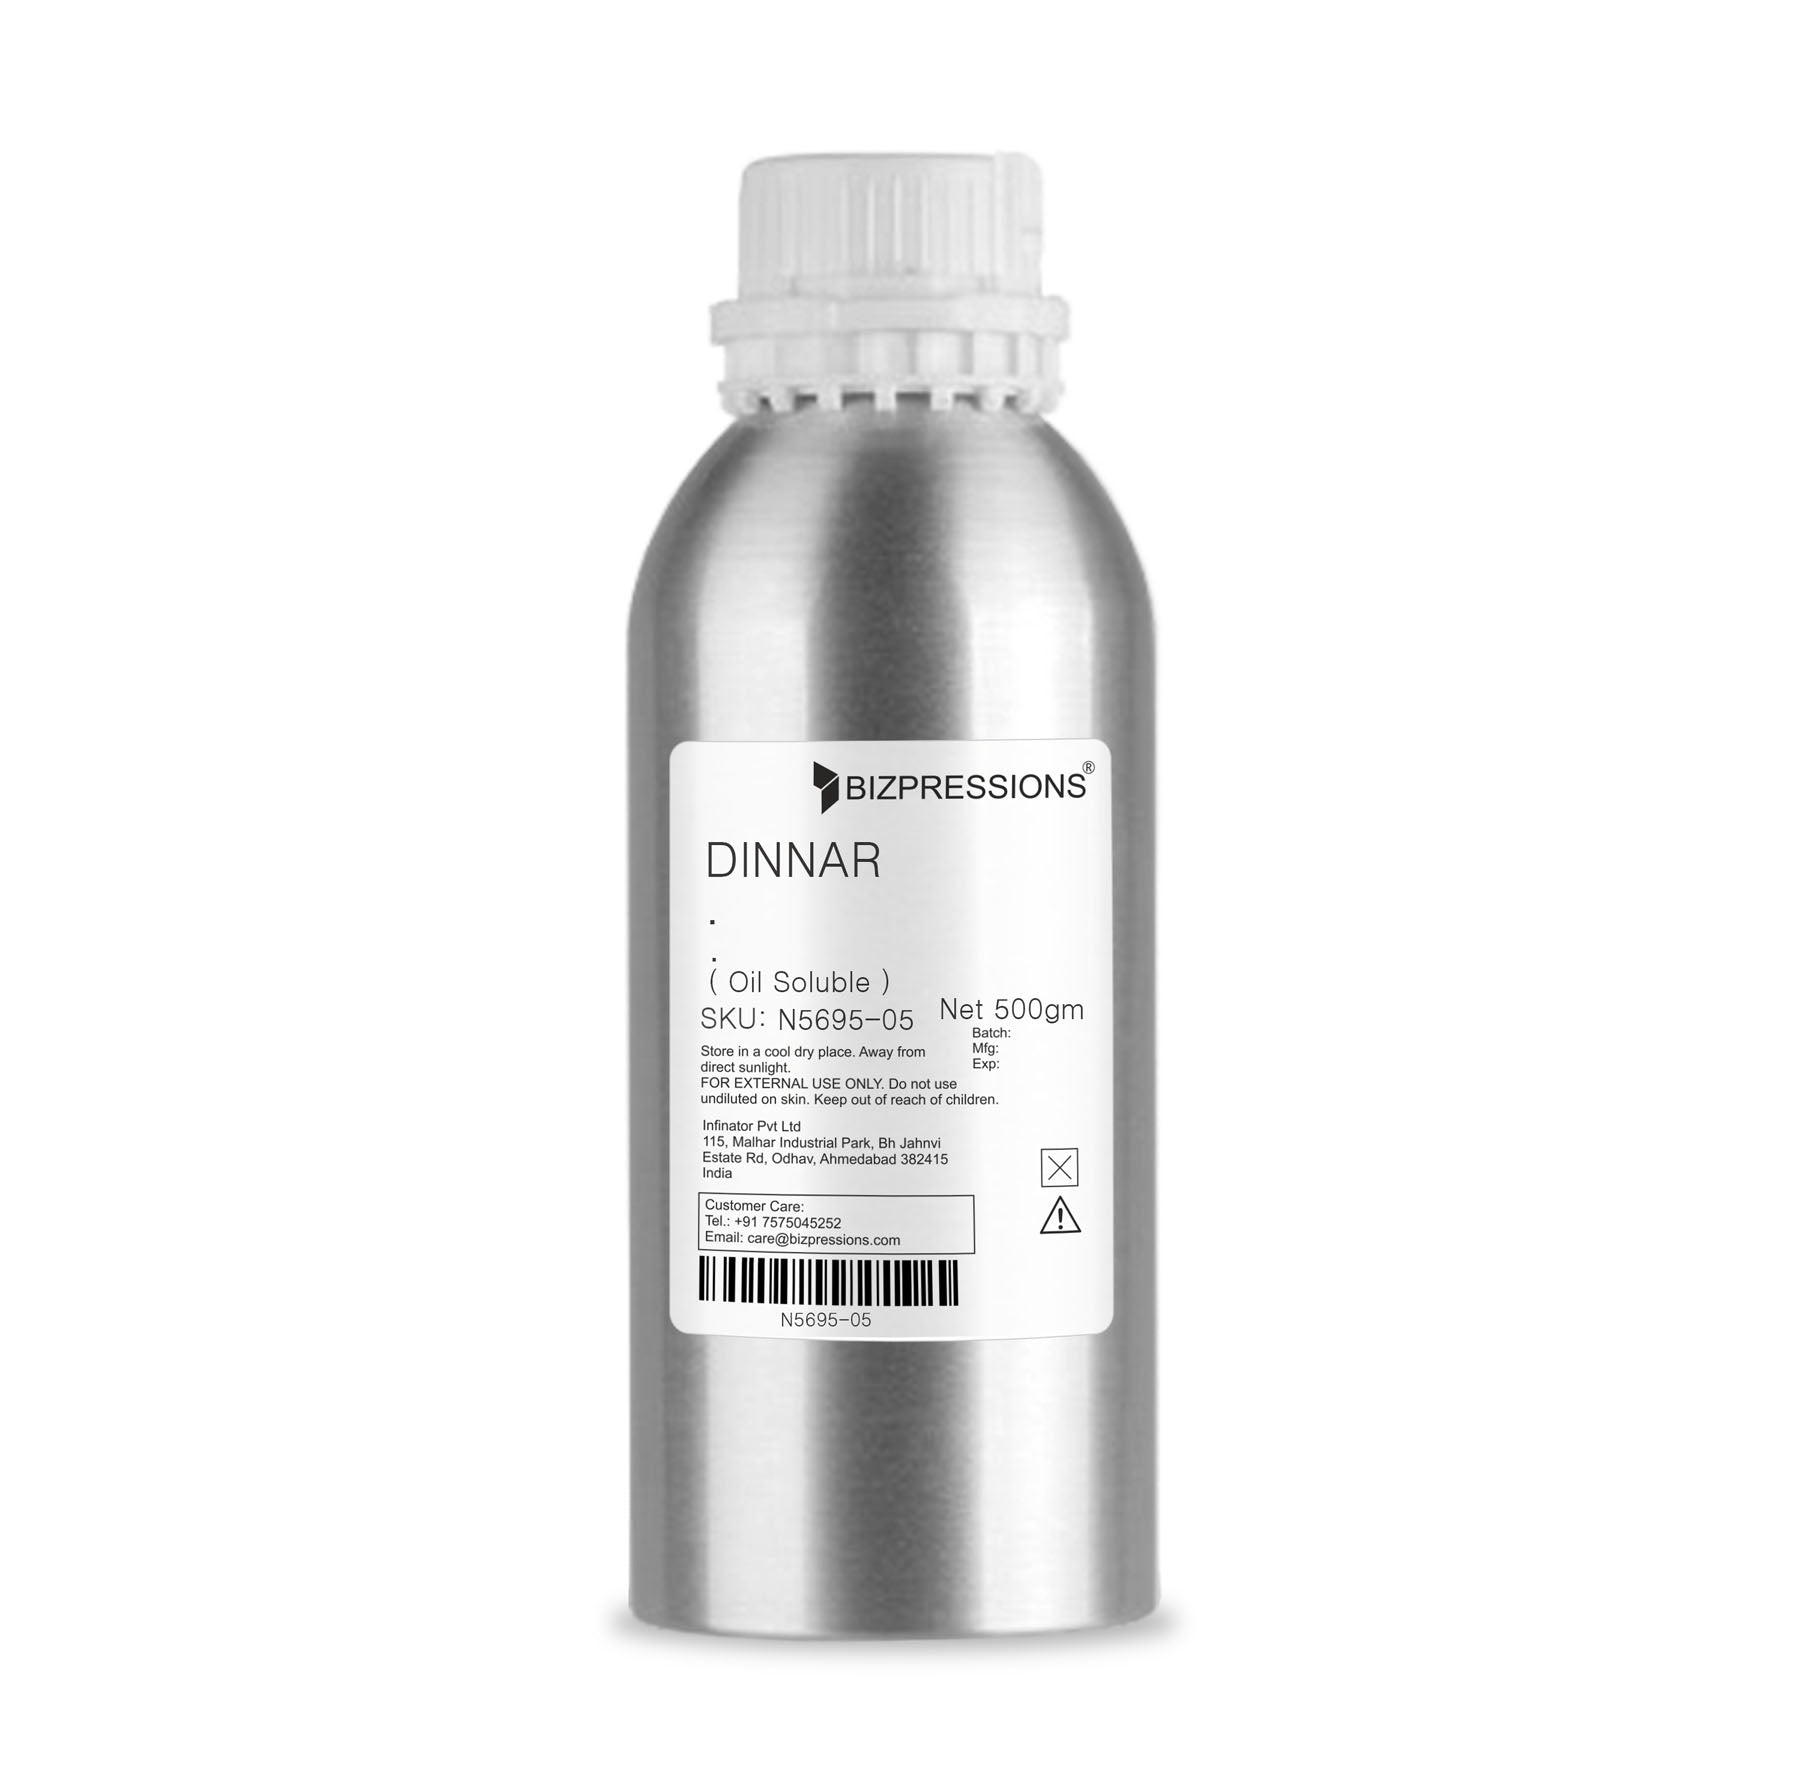 DINNAR - Fragrance ( Oil Soluble ) - 500 gm